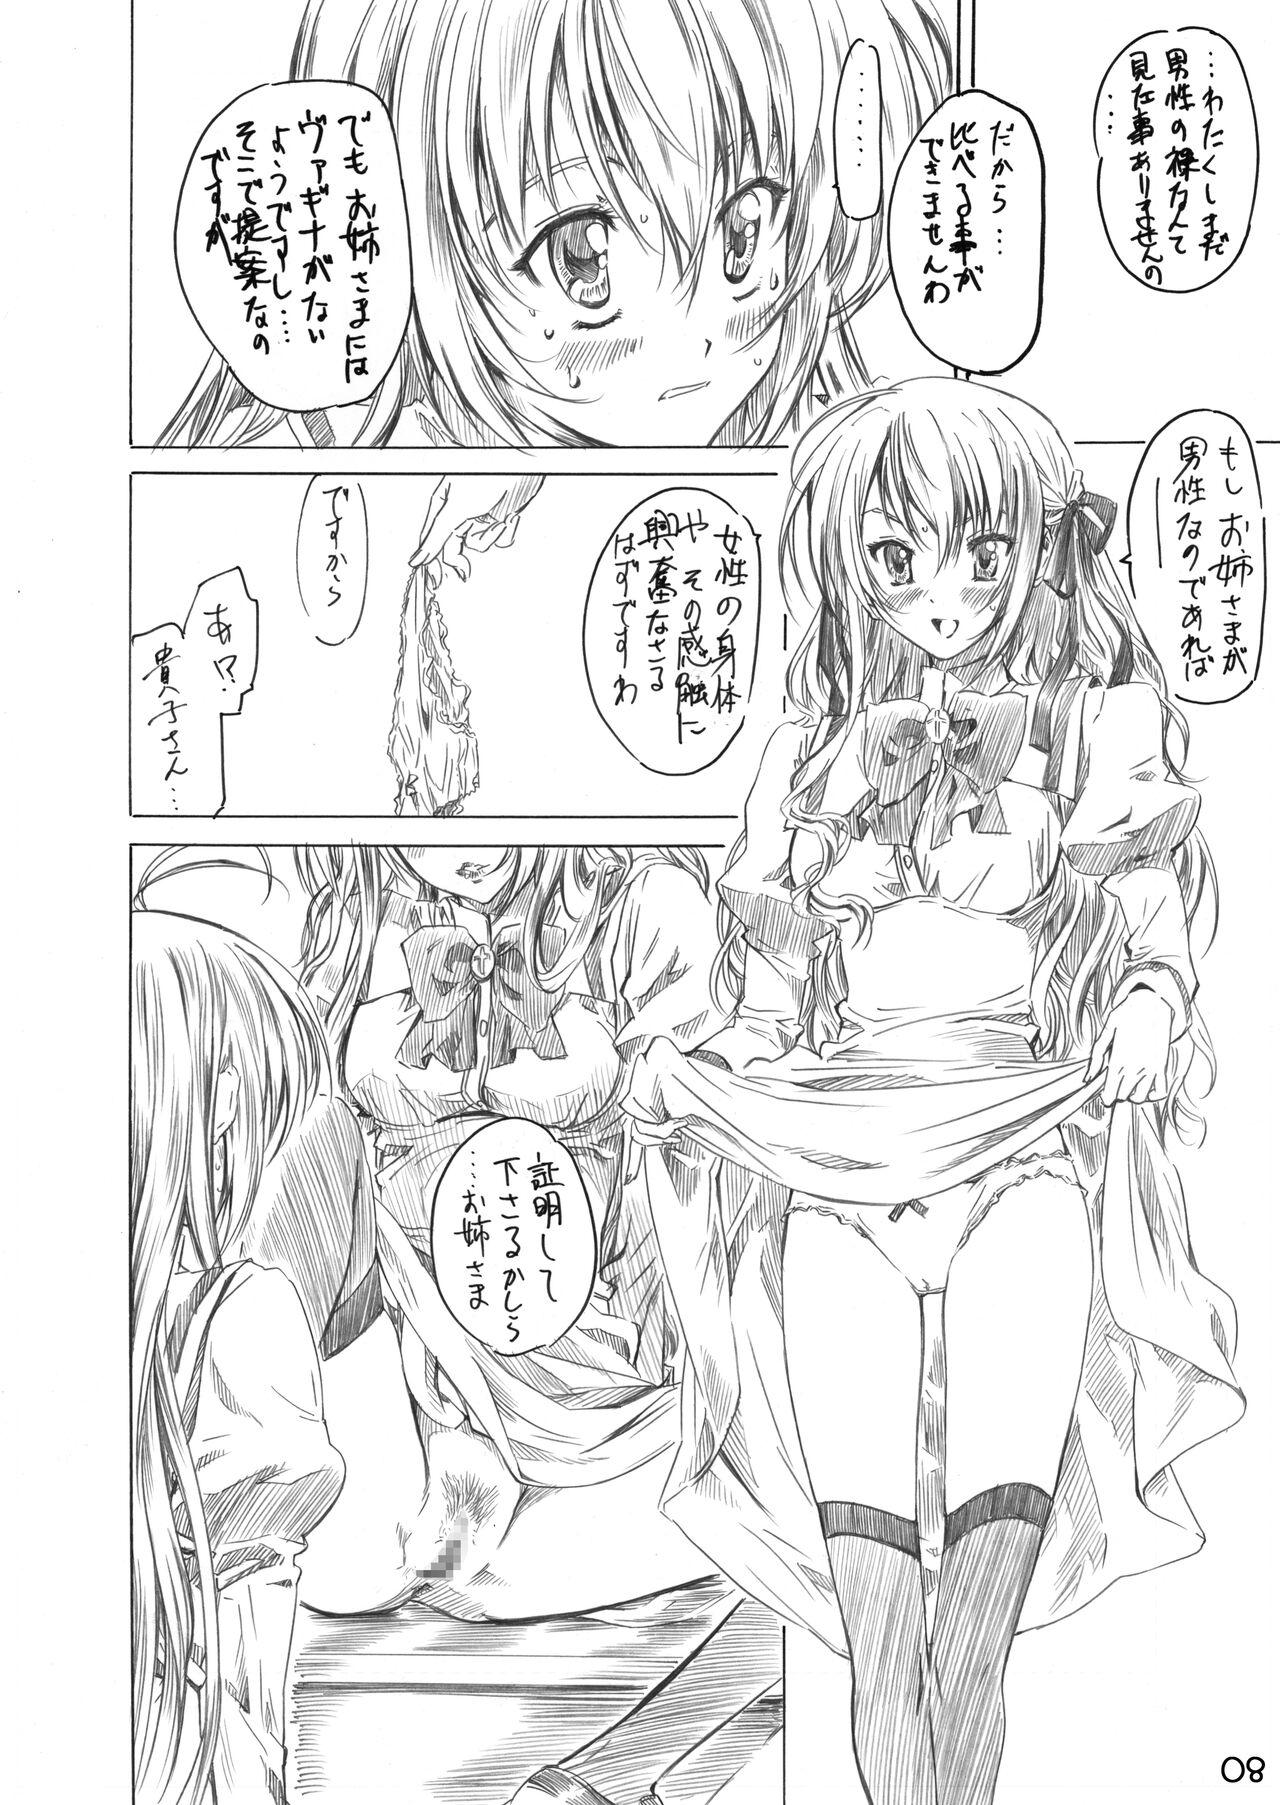 Licking Otome wa Boku de Nani Shiteru - Otome wa boku ni koishiteru Arabic - Page 6